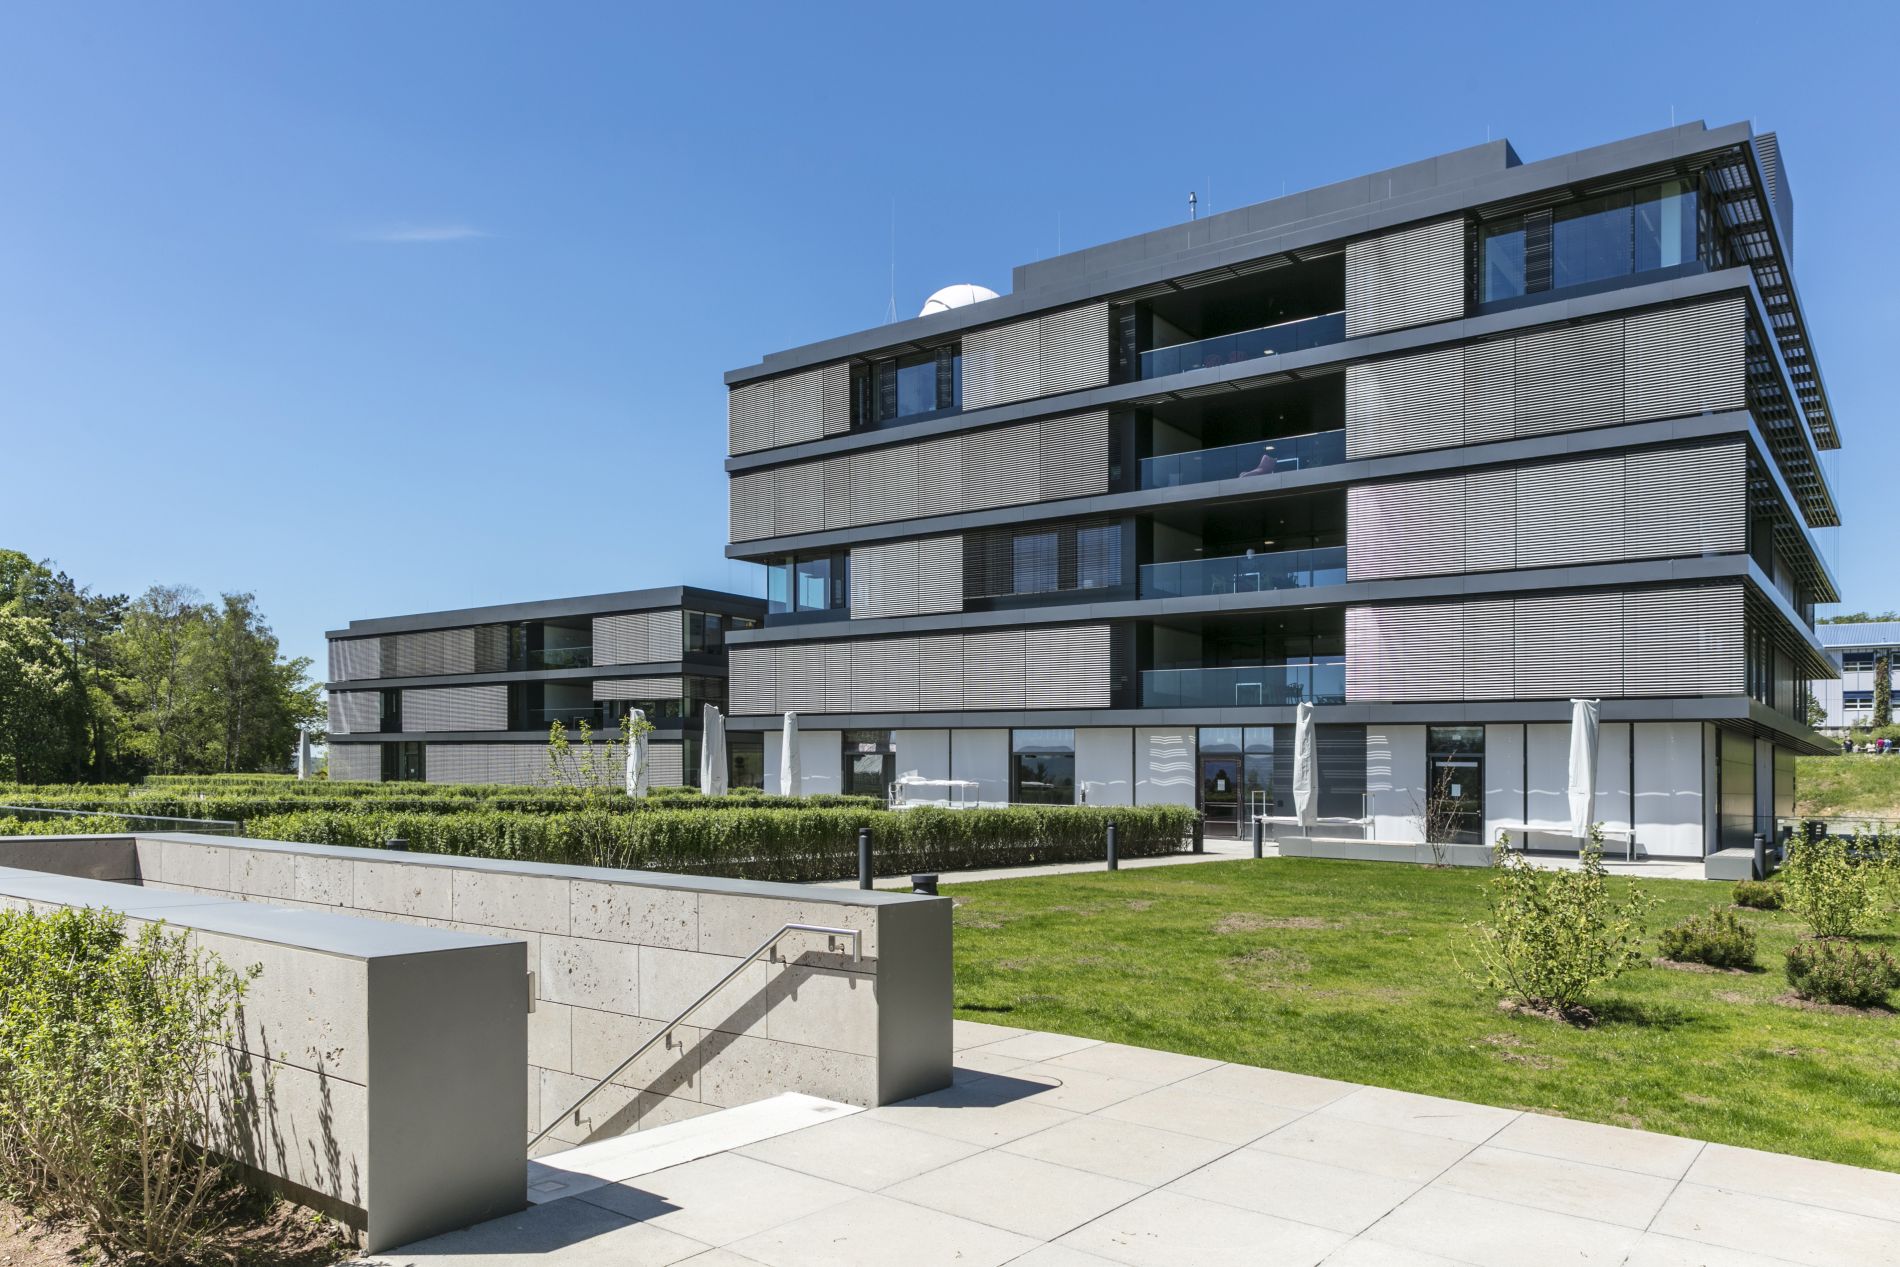 Das Bild zeigt die Ost-Ansicht des Max-Planck-Instituts für Intelligente Systeme in Tübingen: Dies sind zwei Gebäude mit Fassaden aus großen Glasflächen und Gesimsen aus Aluminium, von denen das rechts stehende mit fünf und das linke, weiter hinten stehende mit drei Geschossen zu sehen sind.